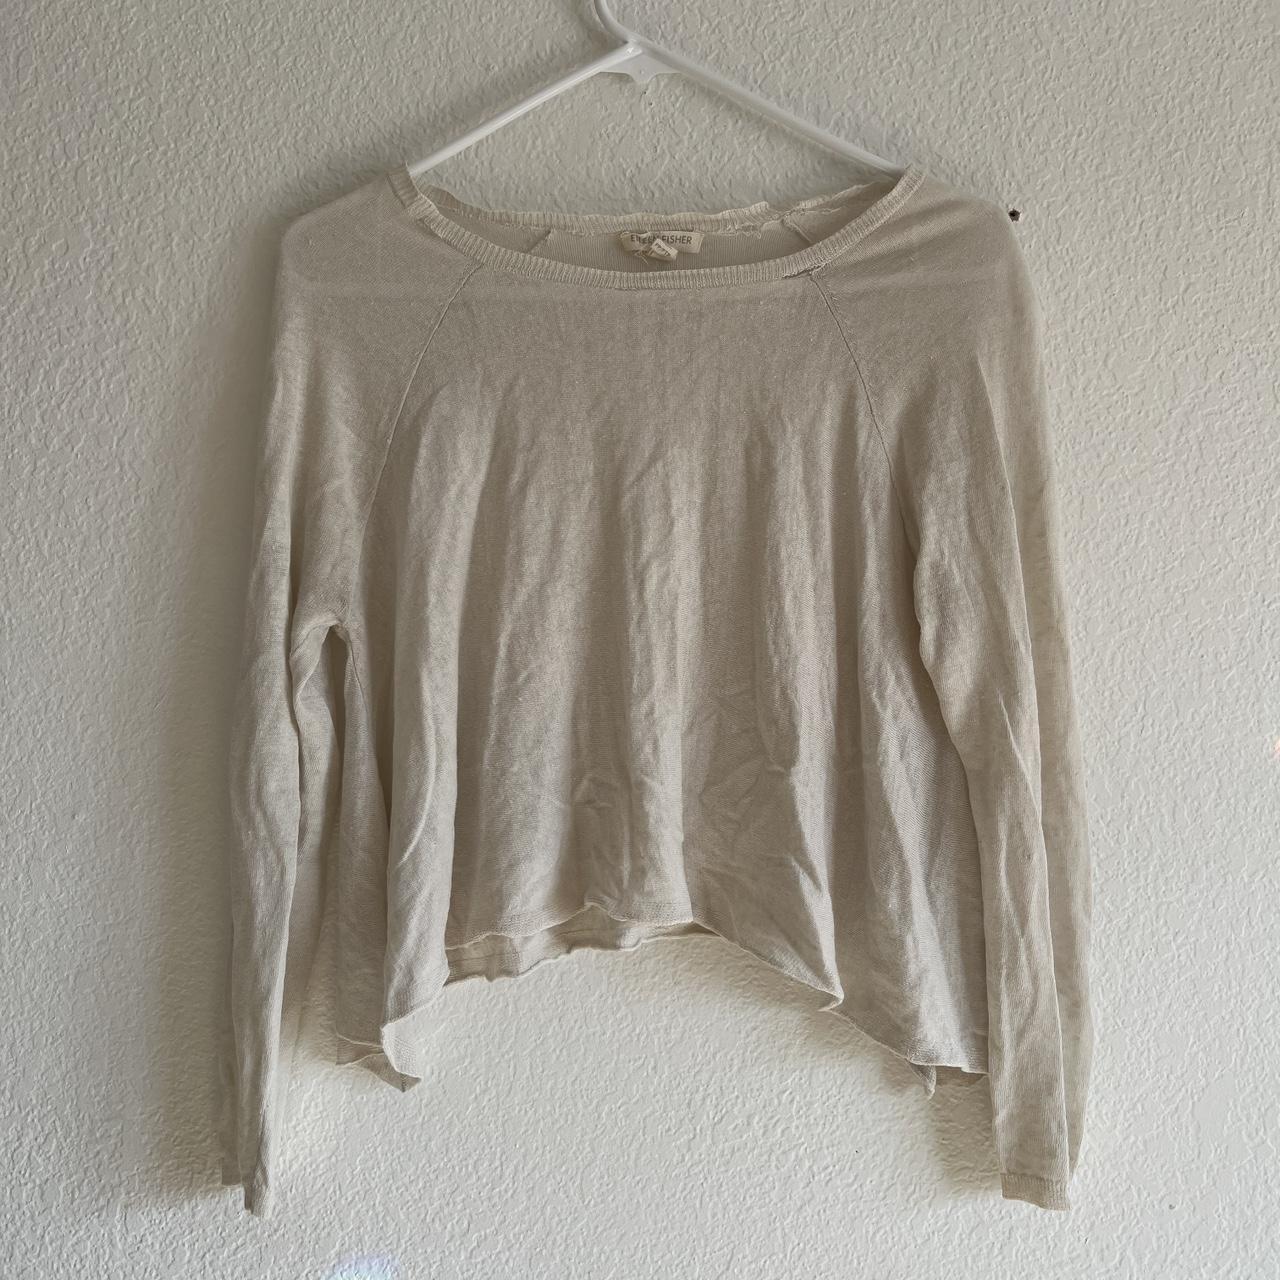 Eileen Fisher Women's White and Cream Shirt | Depop